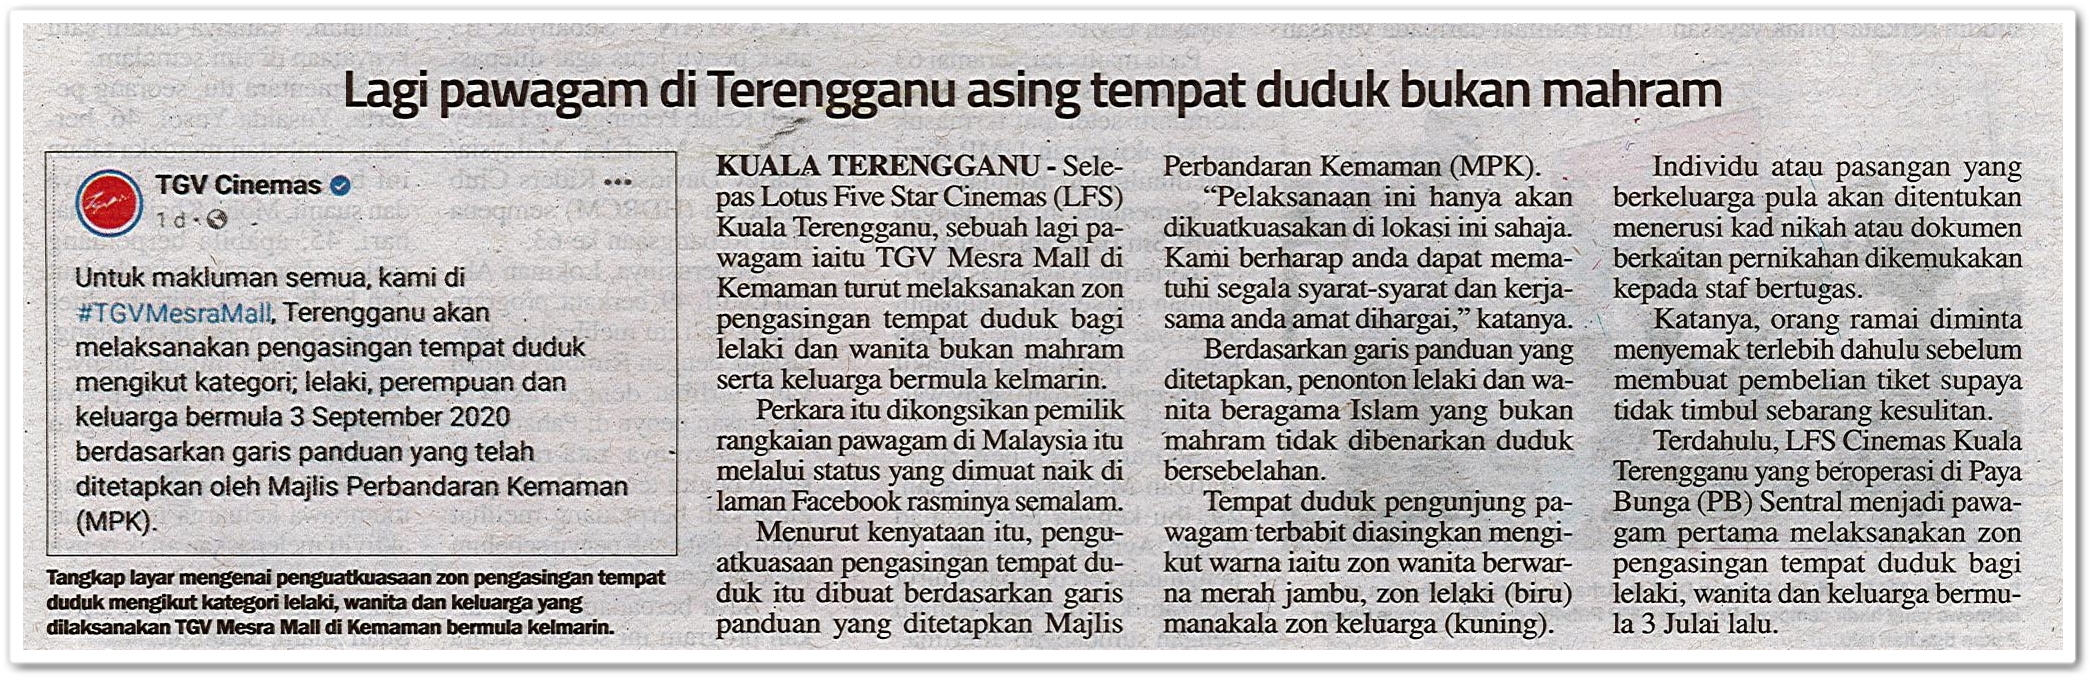 Lagi pawagam di Terengganu asing tempat duduk bukan mahram - Keratan akhbar Sinar Harian 5 September 2020